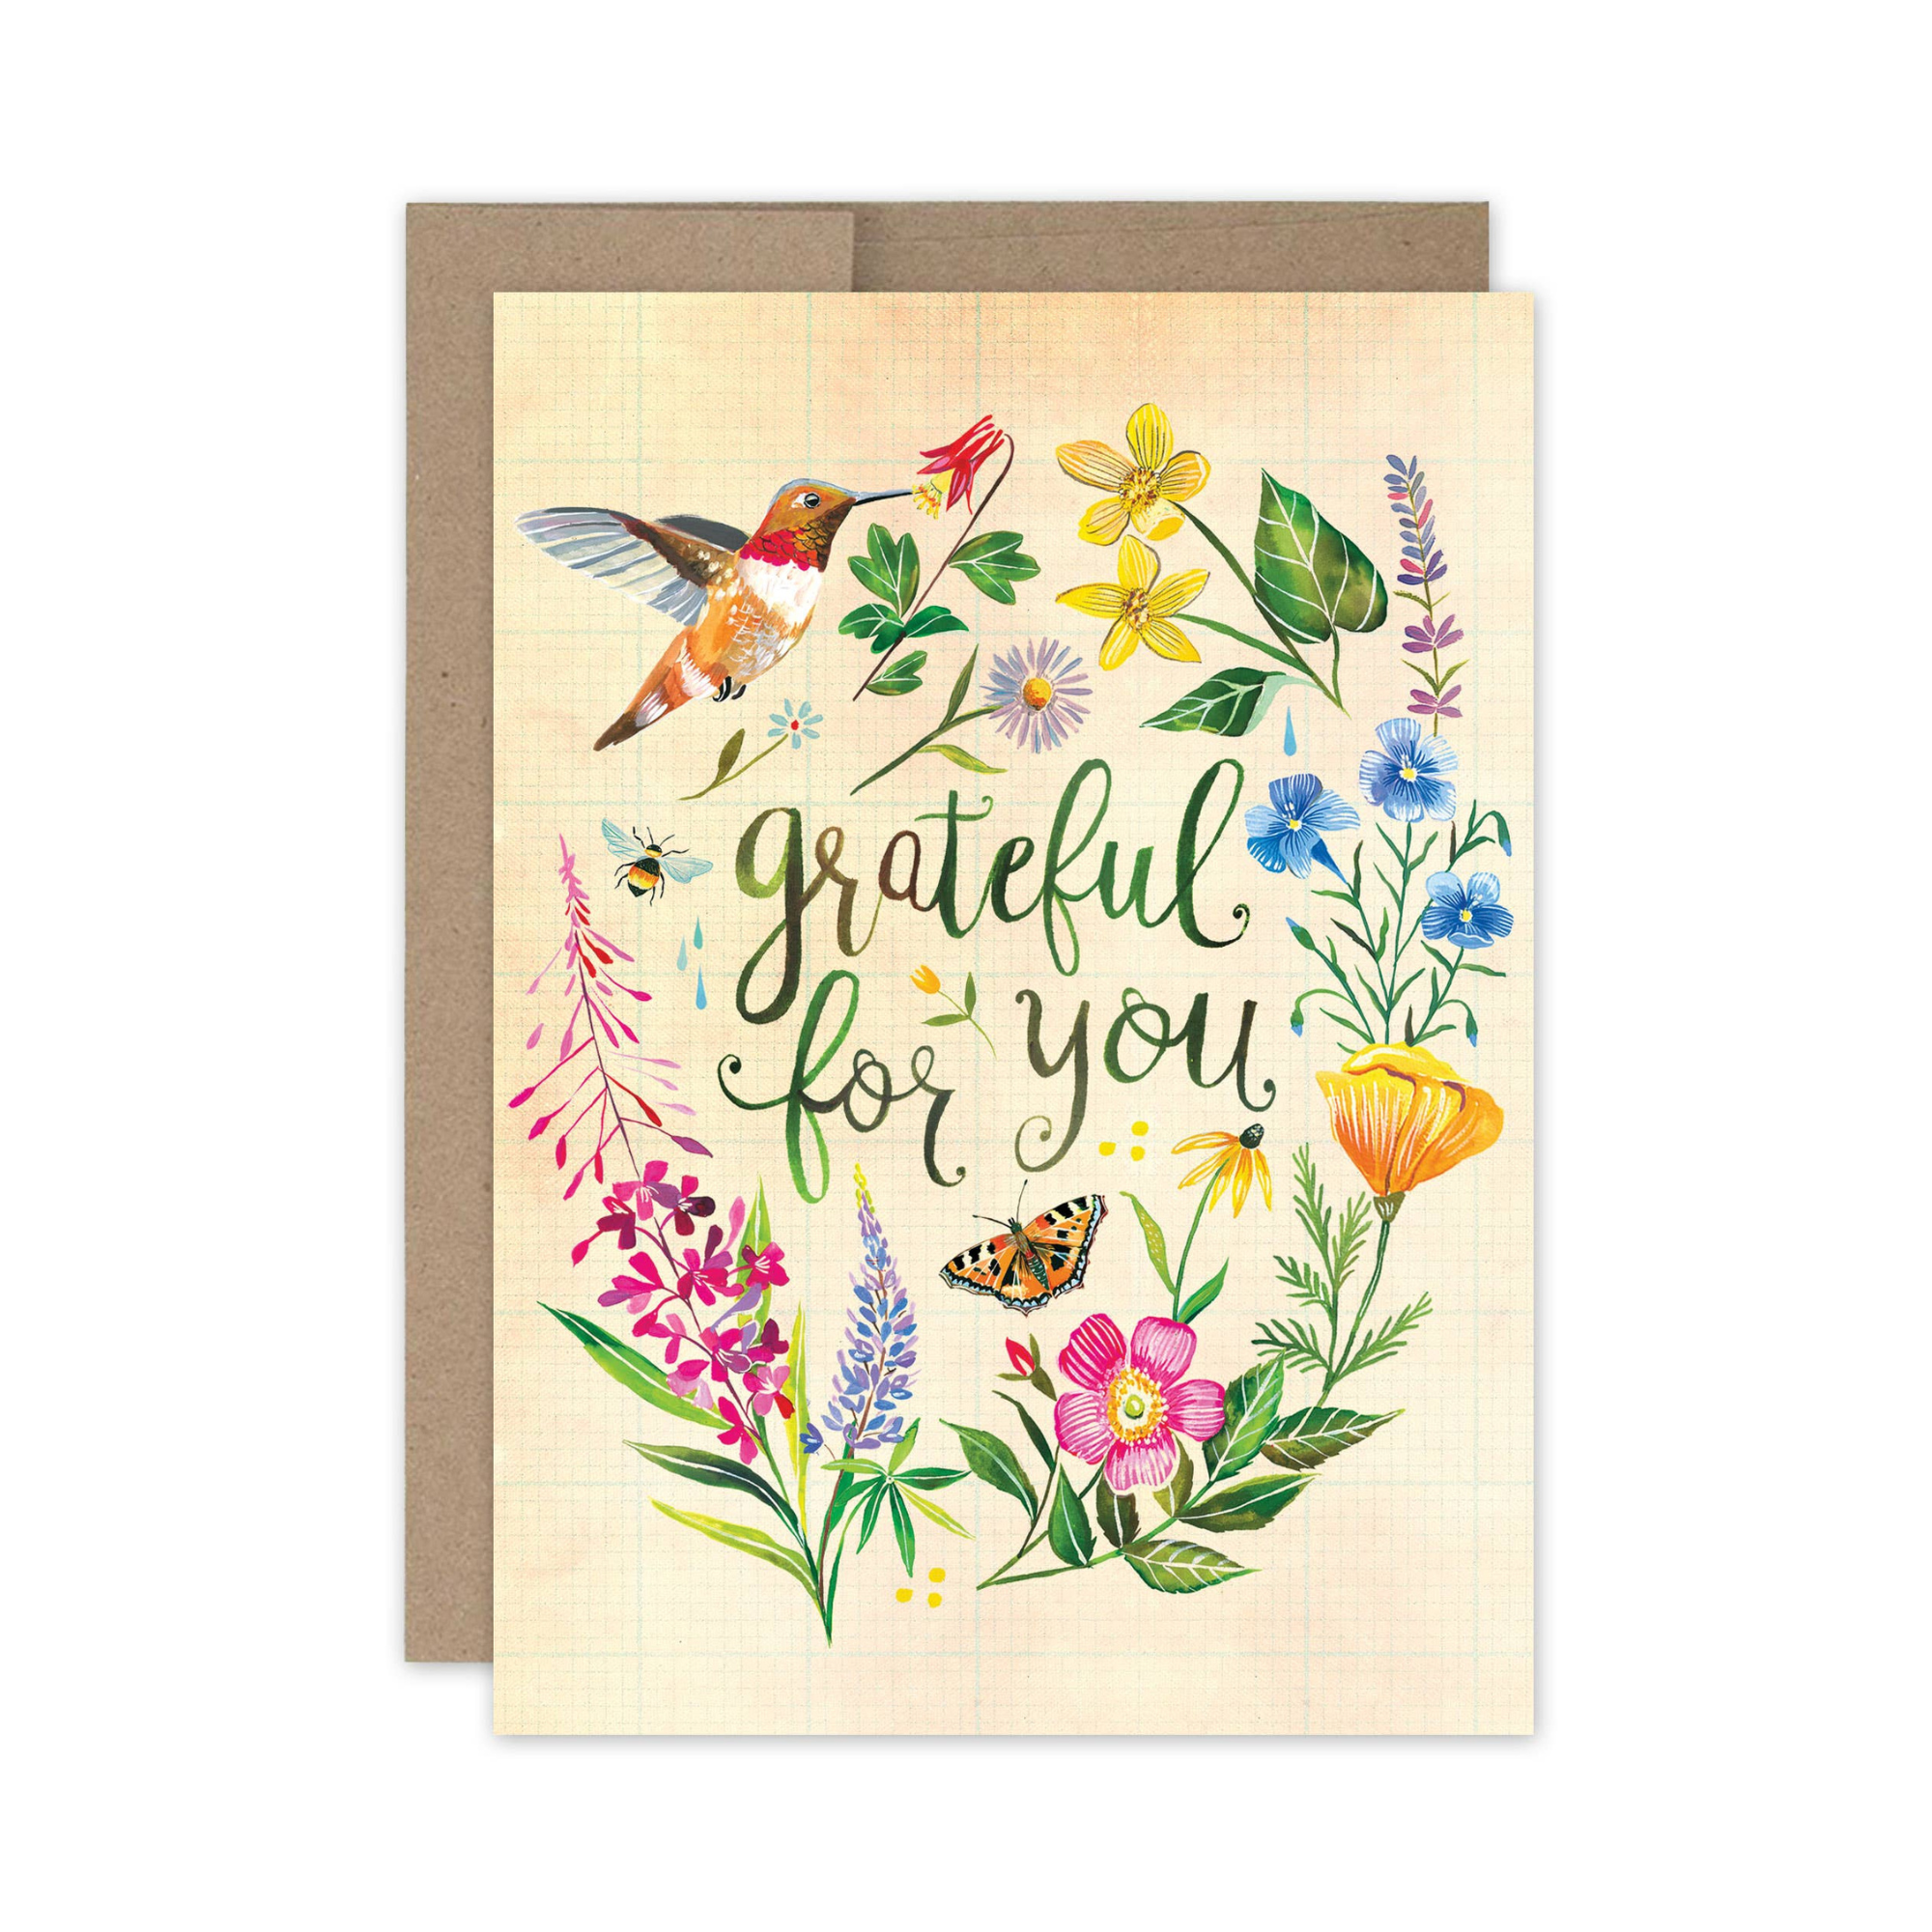 Grateful Hummingbird Thank You Card